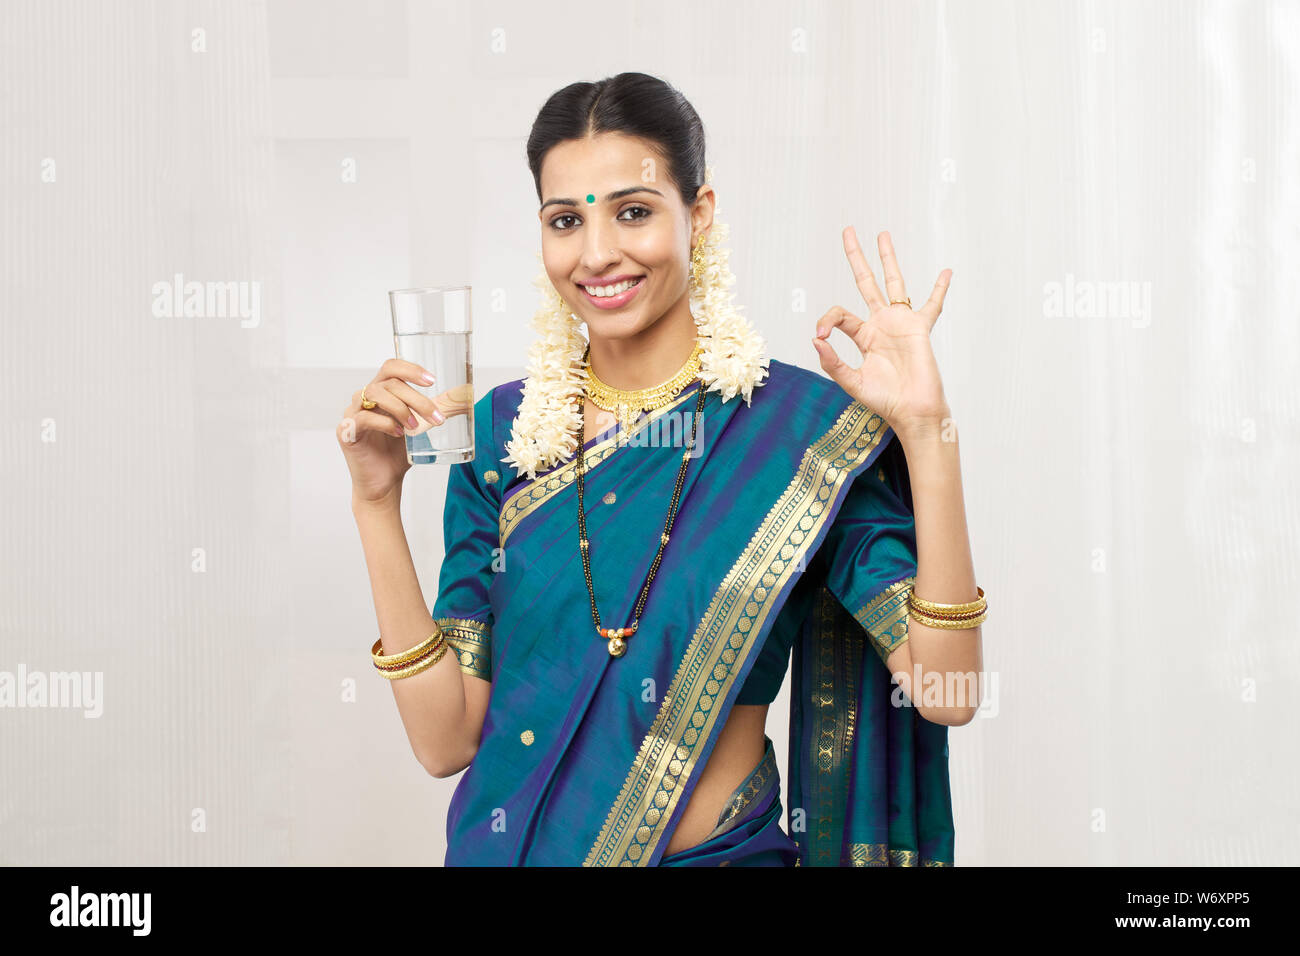 Femme indienne du Sud tenant un verre d'eau et souriant Banque D'Images